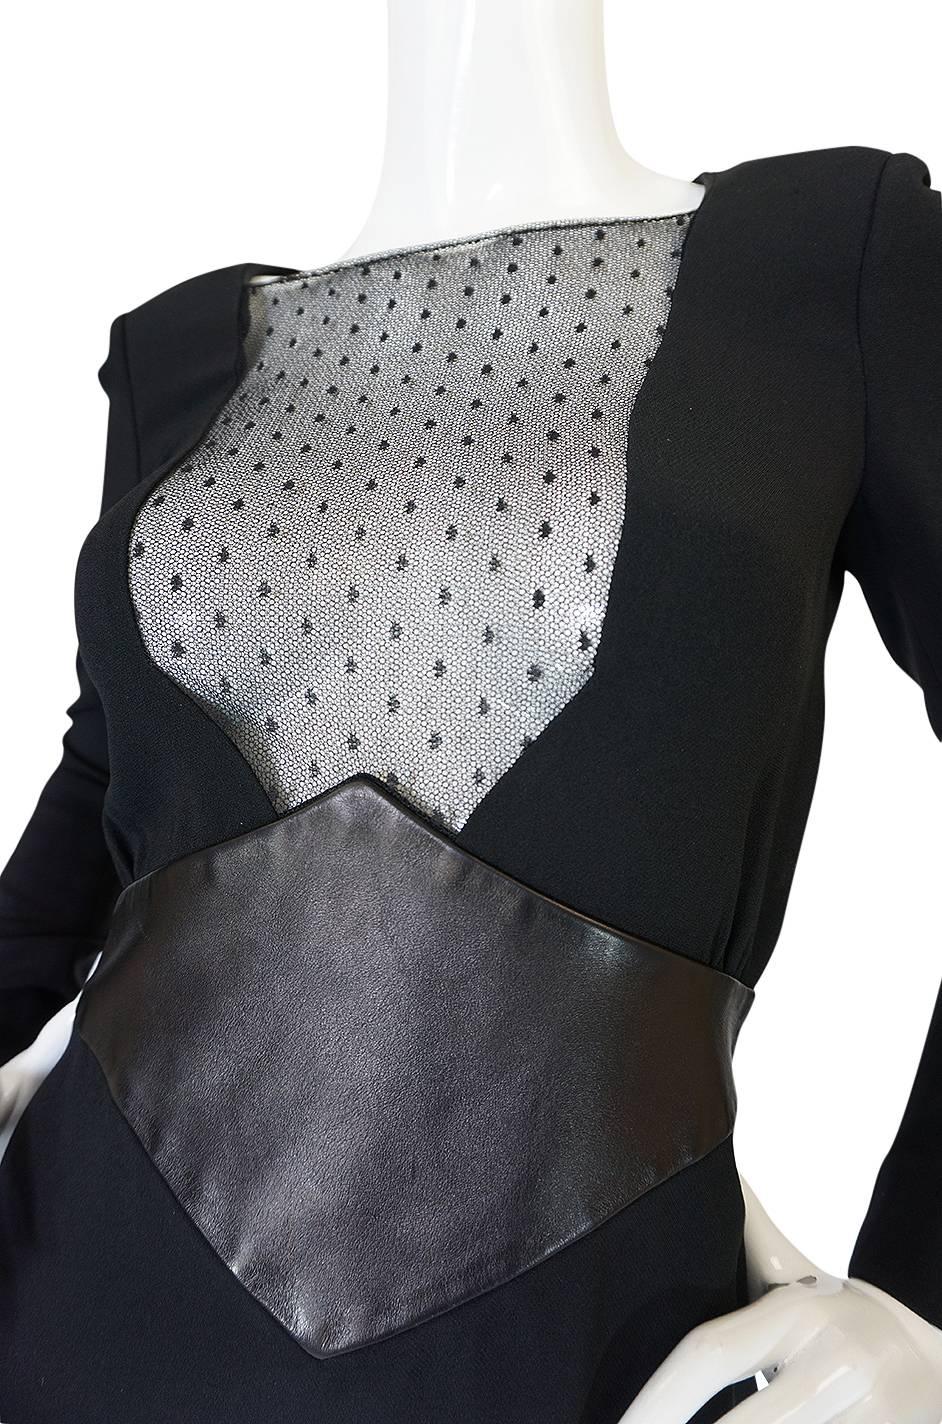 c2014 Hedi Slimane for Saint Laurent Lace & Leather Dress 2